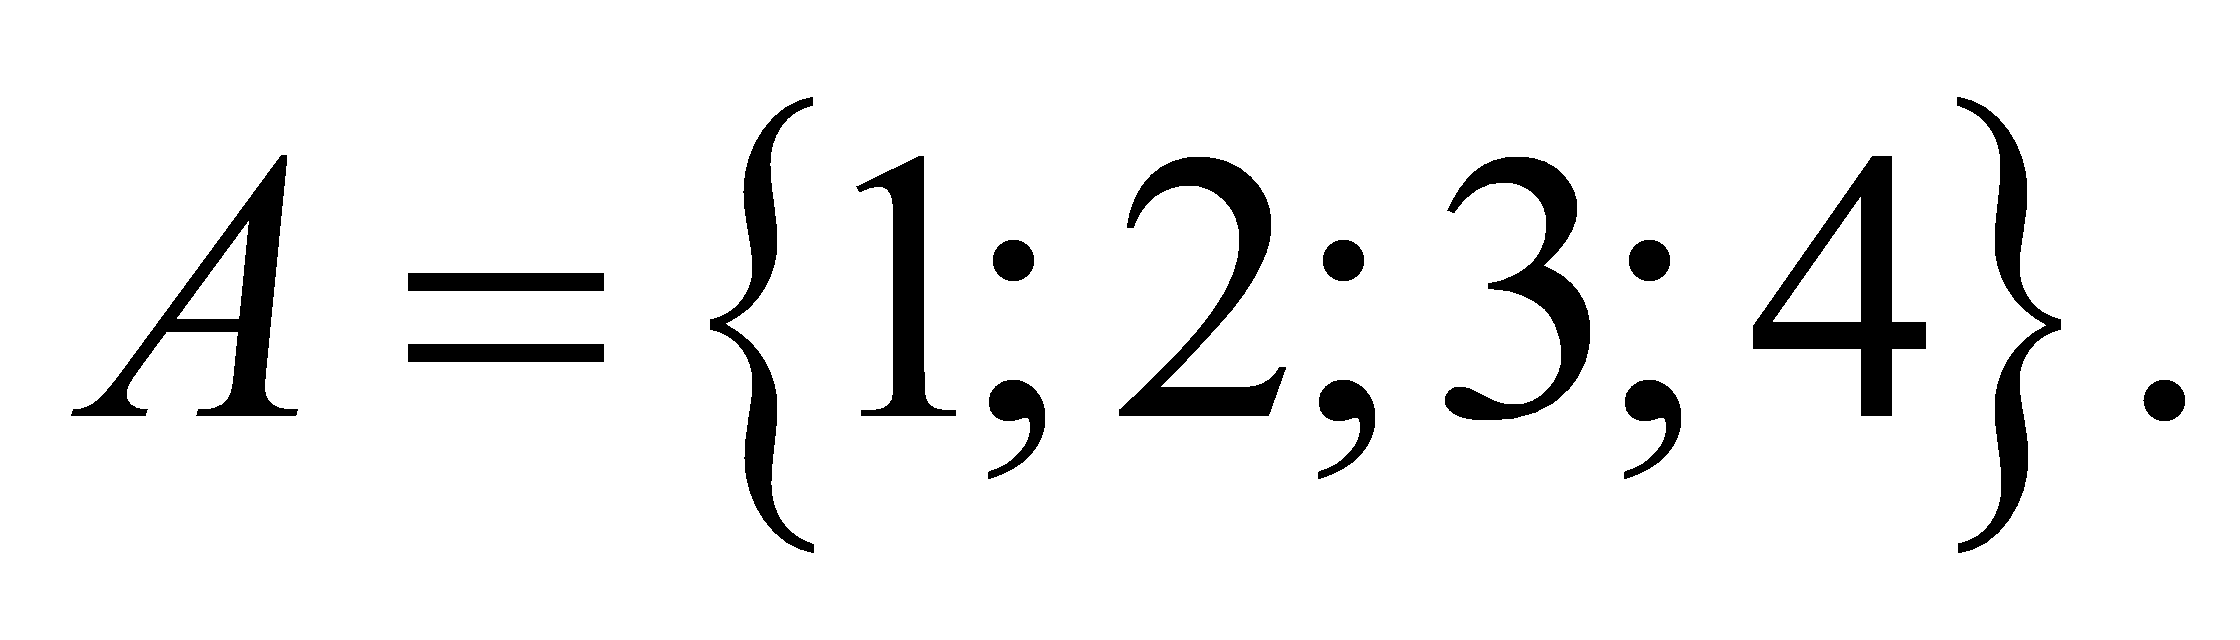 Với các chữ số 0 1 2 3 4 6 có thể lập được bao nhiêu số chẵn mỗi số gồm 5 chữ số khác nhau